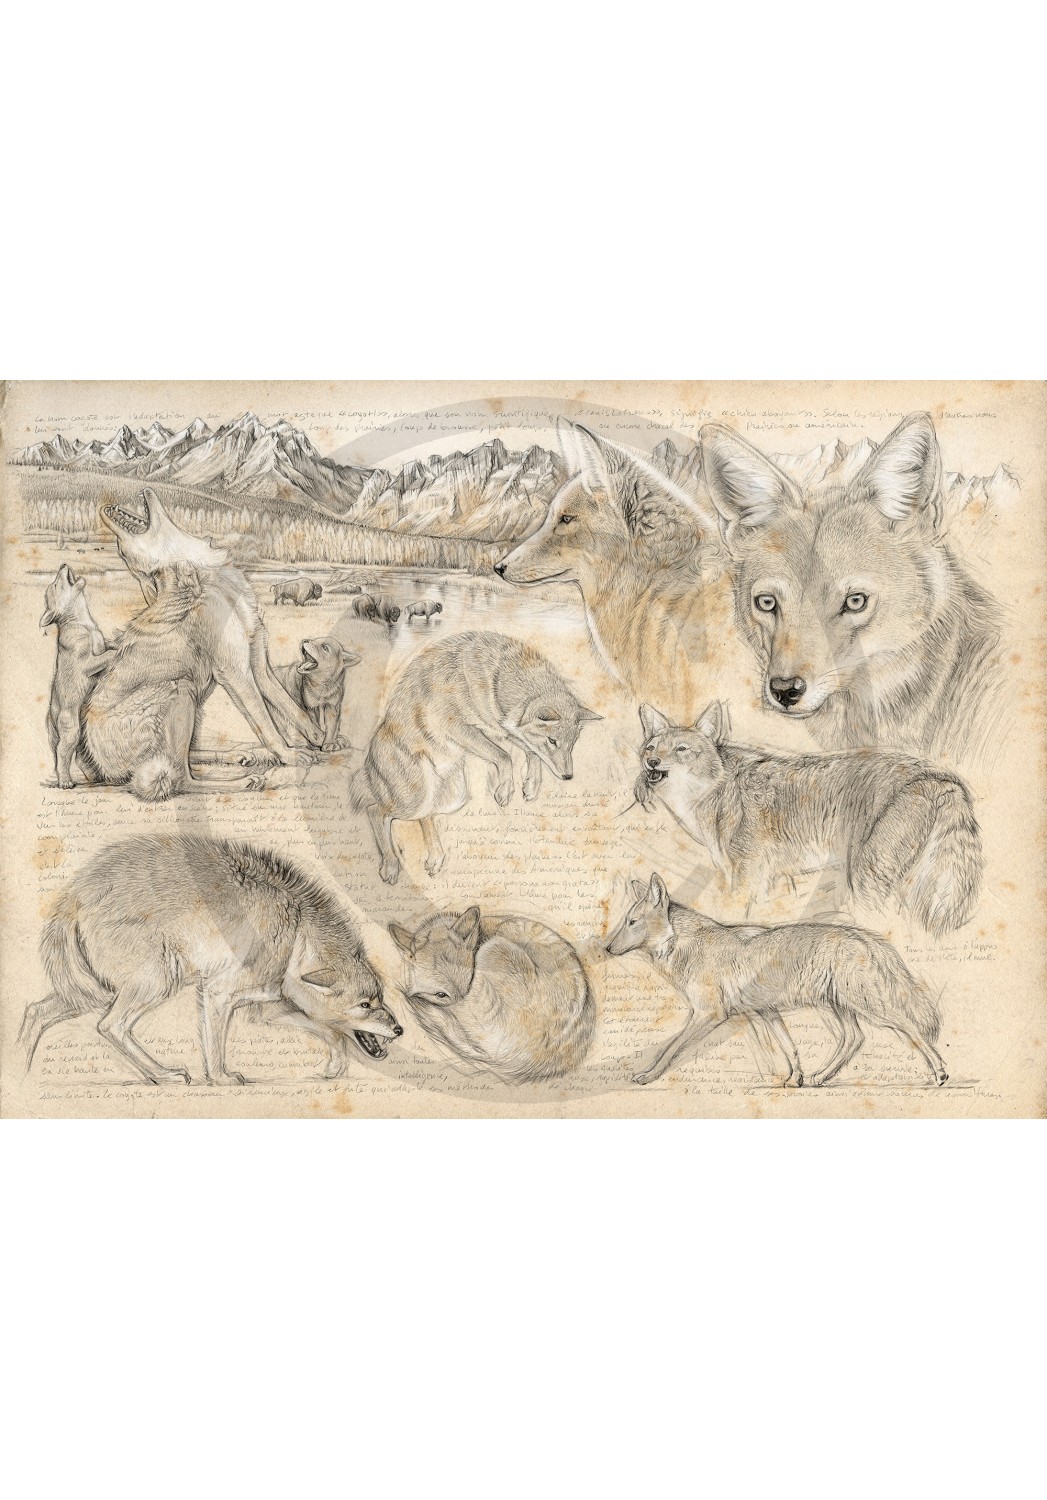 Marcello-art: Fauna temperate zone 391 - American coyote